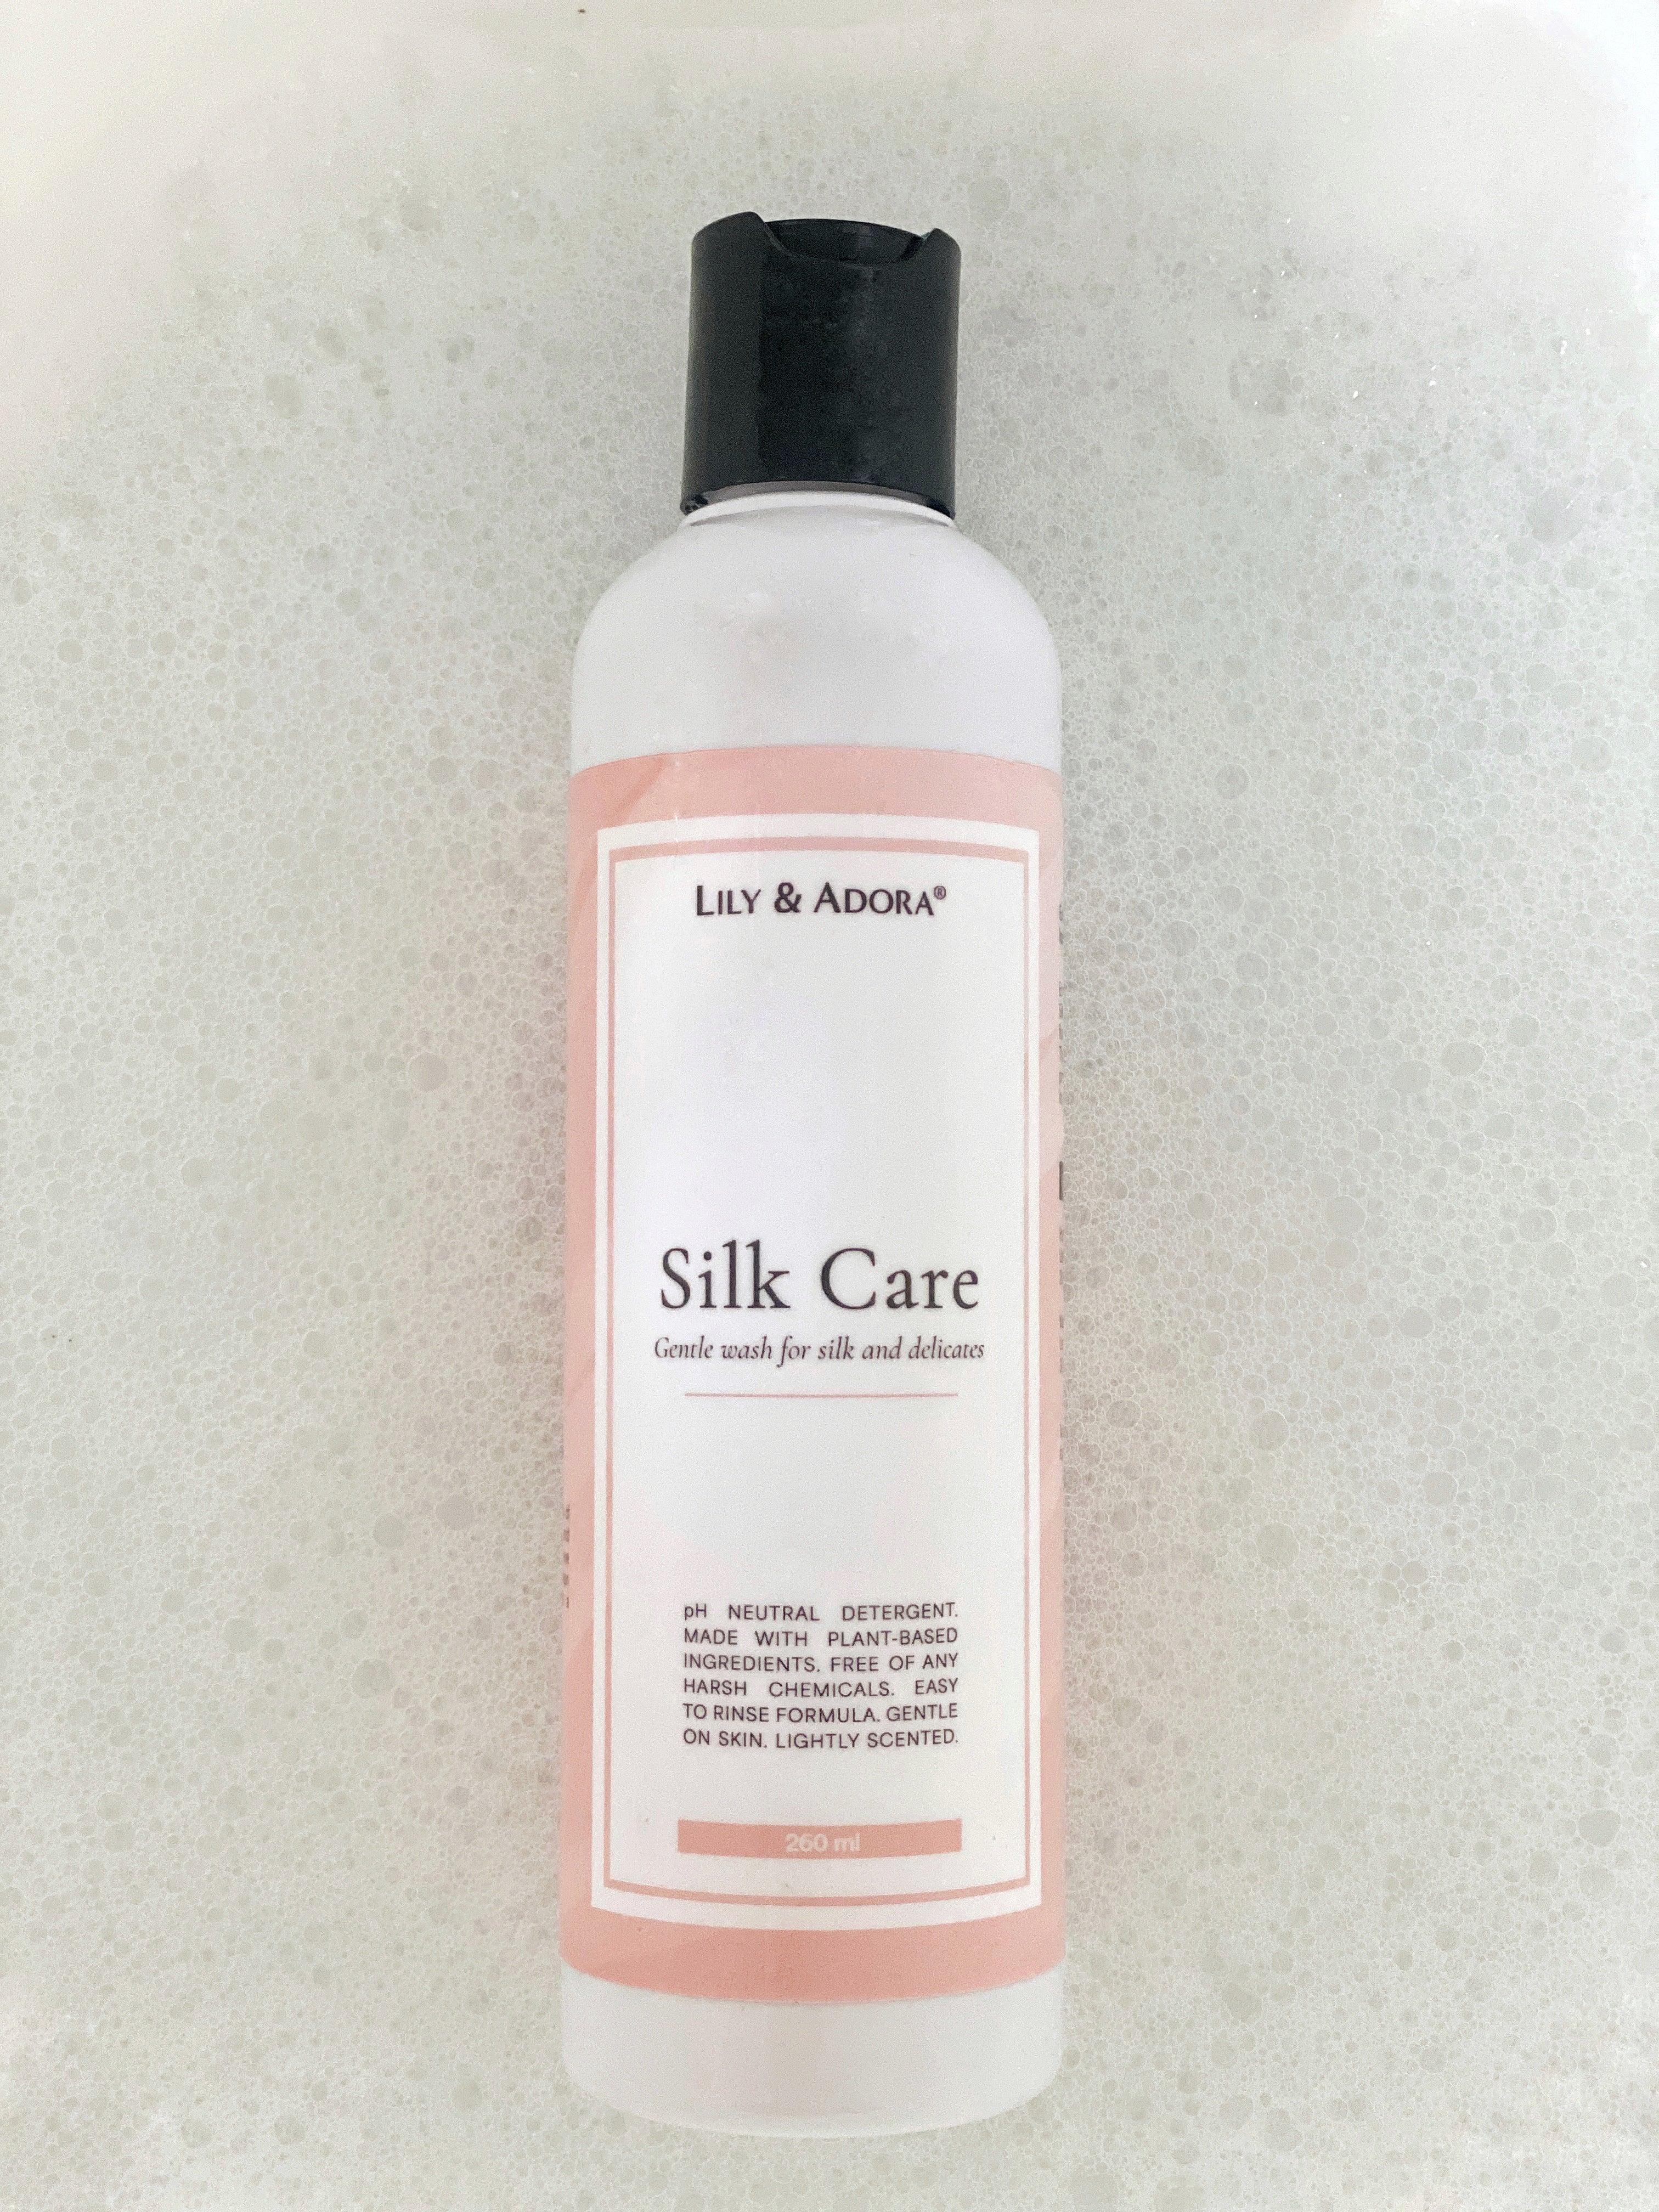 Silk Care